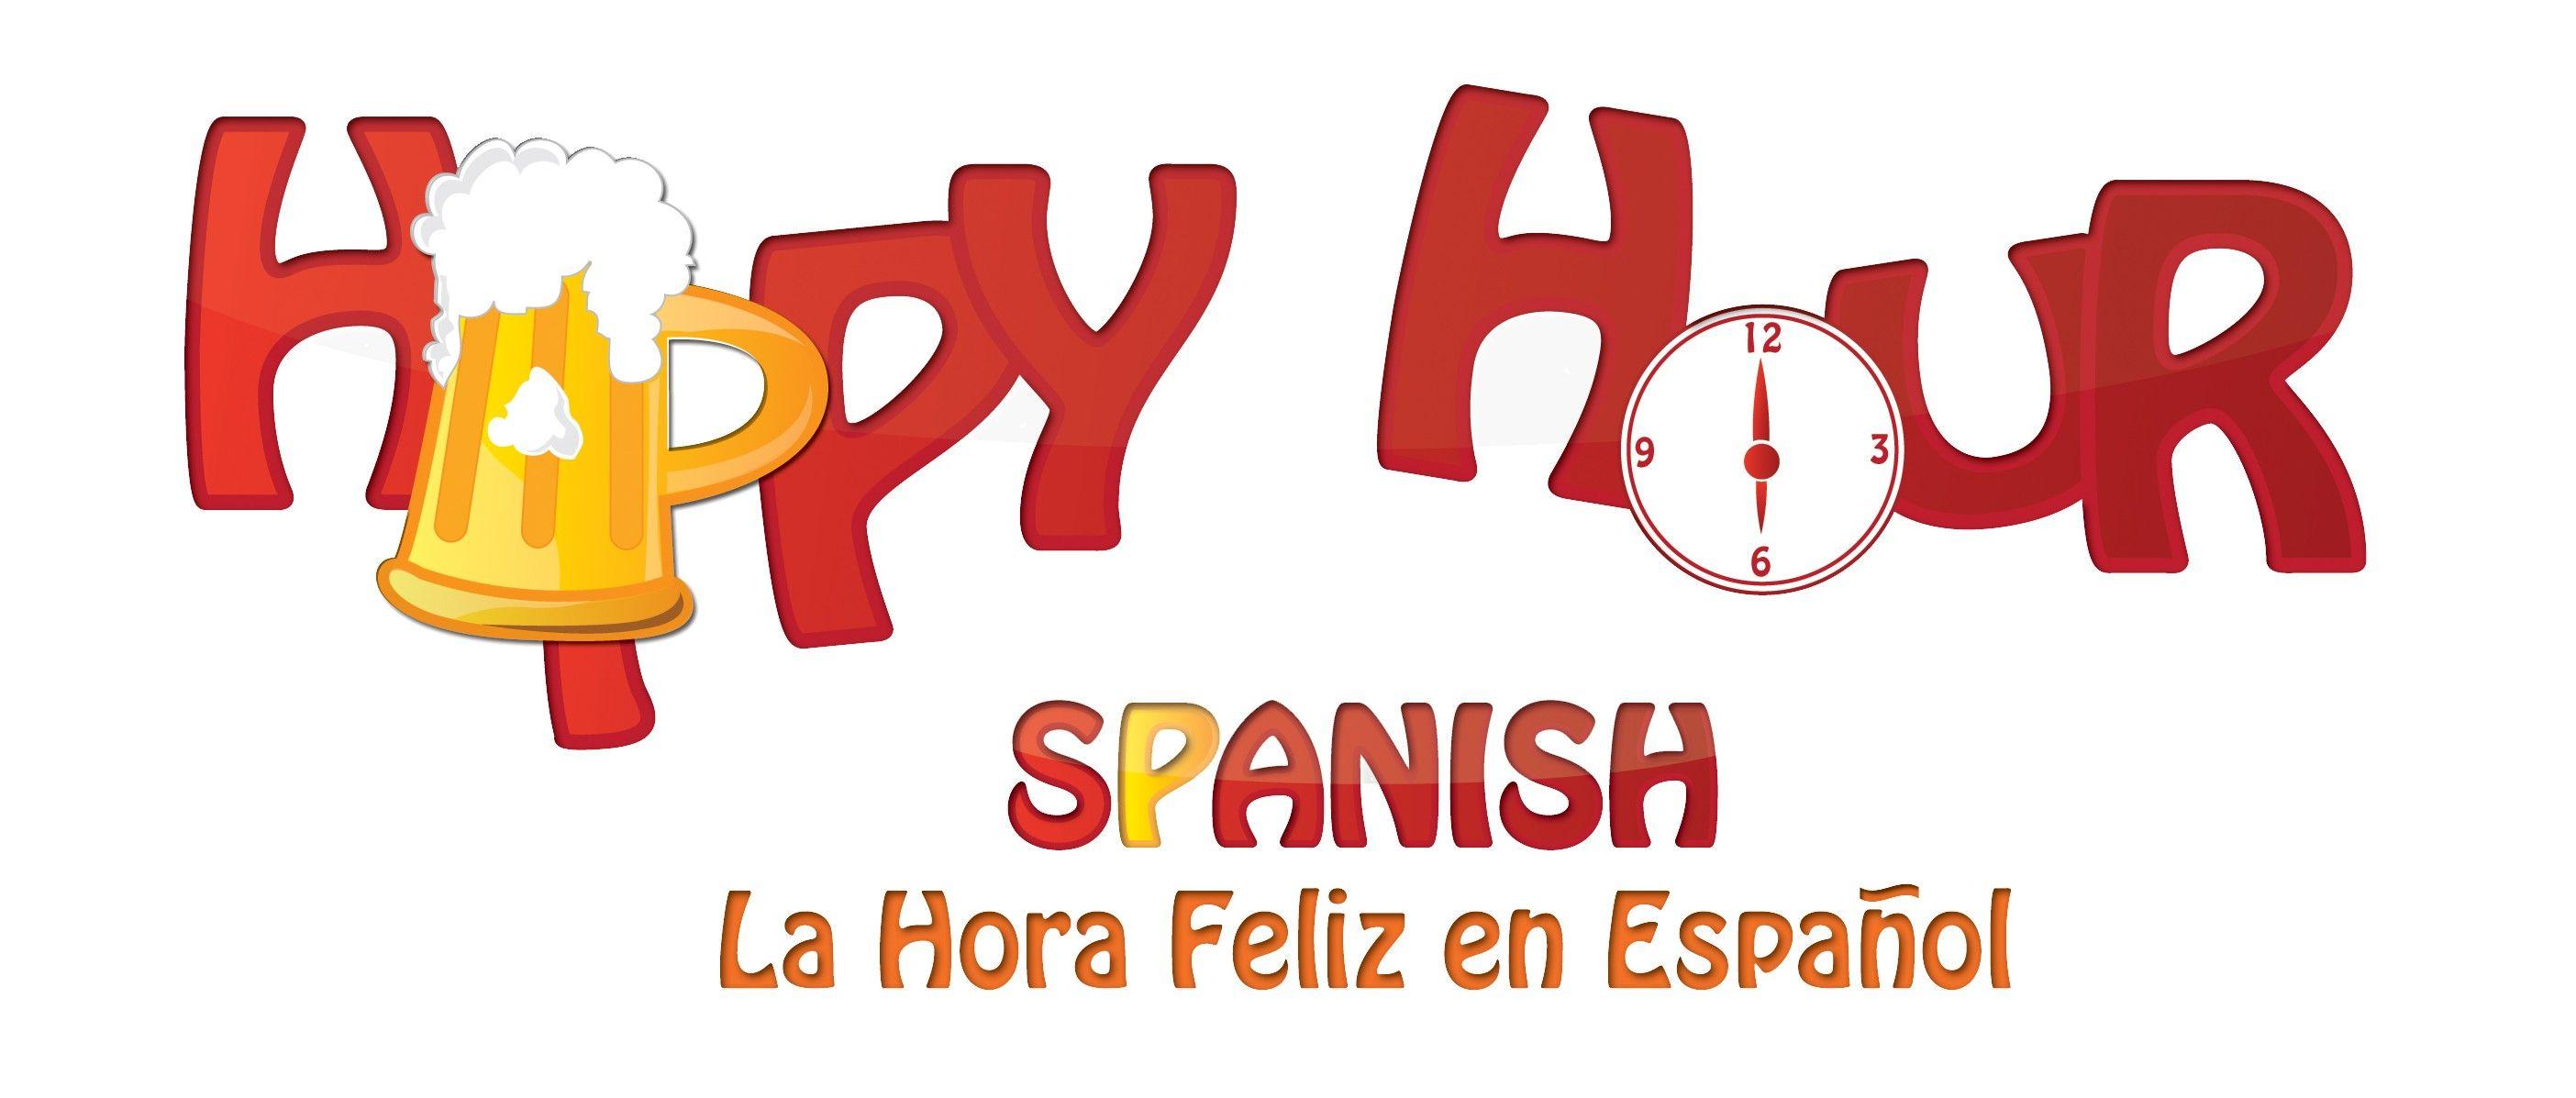 Spanish Logo - Happy Hour Spanish Logo -